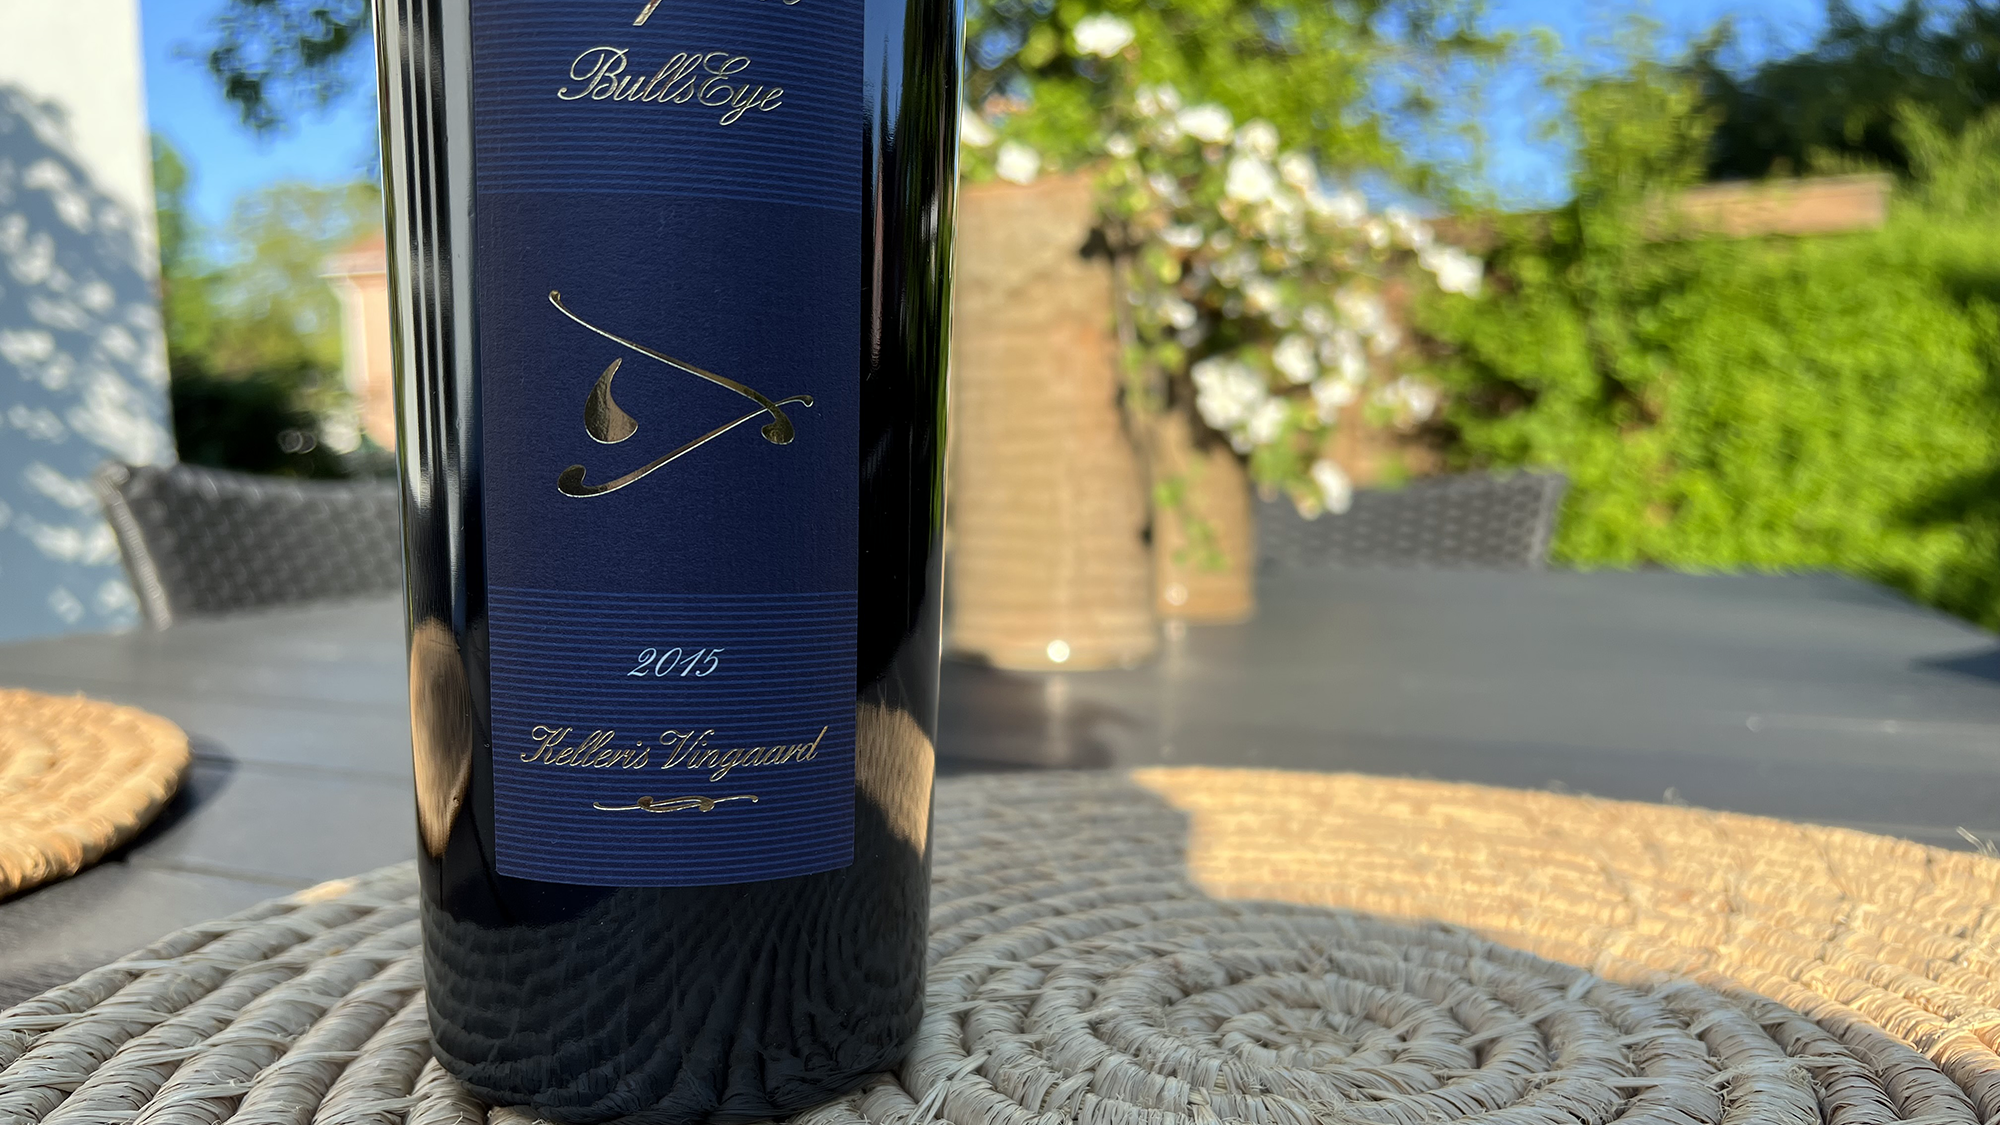 Kelleris Vin frigiver deres Bullseye 2015 – dansk hedvin fra Nordsjælland, når det er bedst